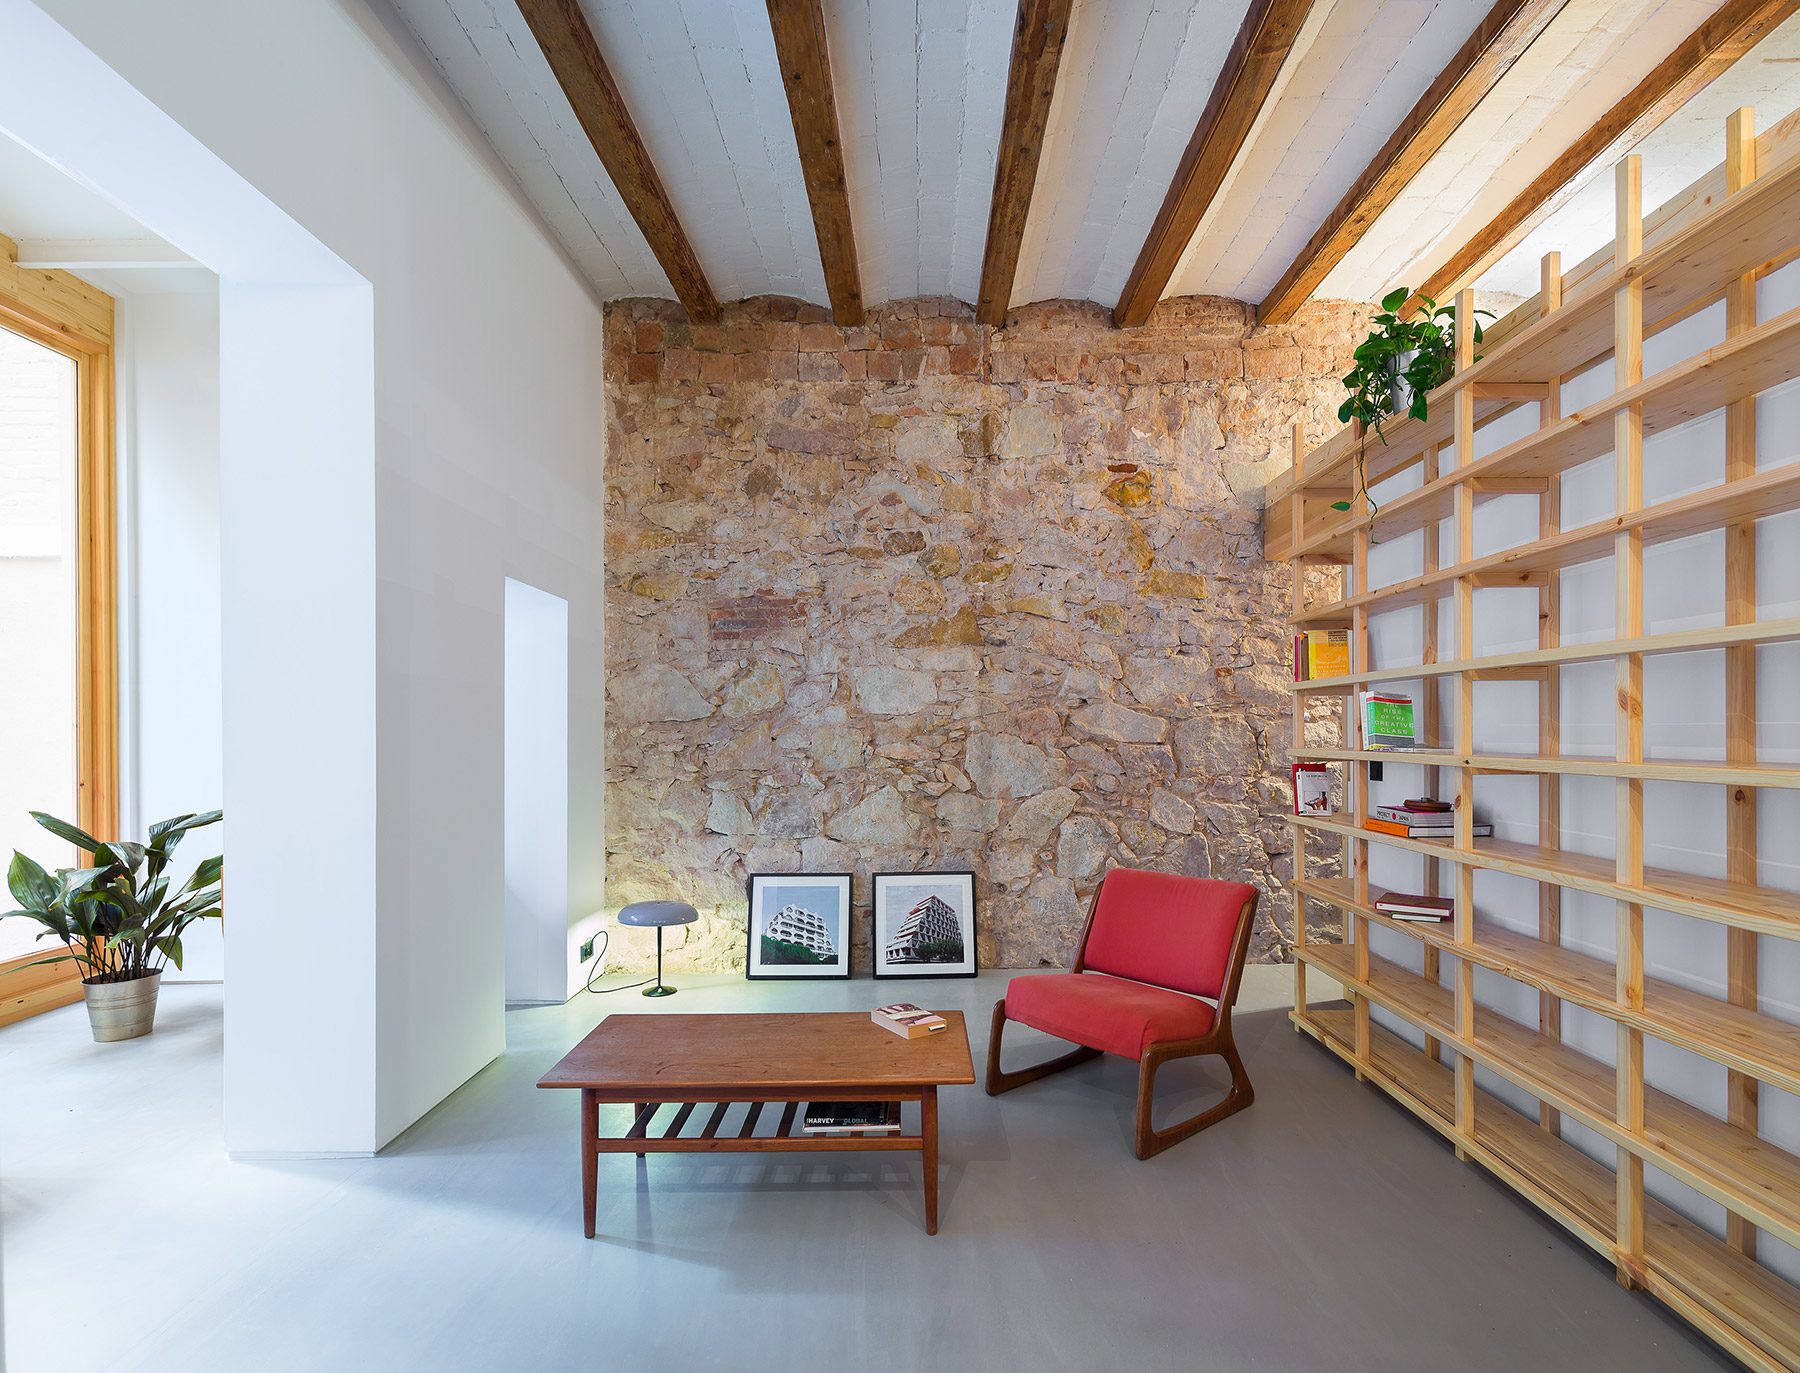 El estilo original de Can Ghalili, una vivienda reformada en Barcelona por los arquitectos de LoCa Studio